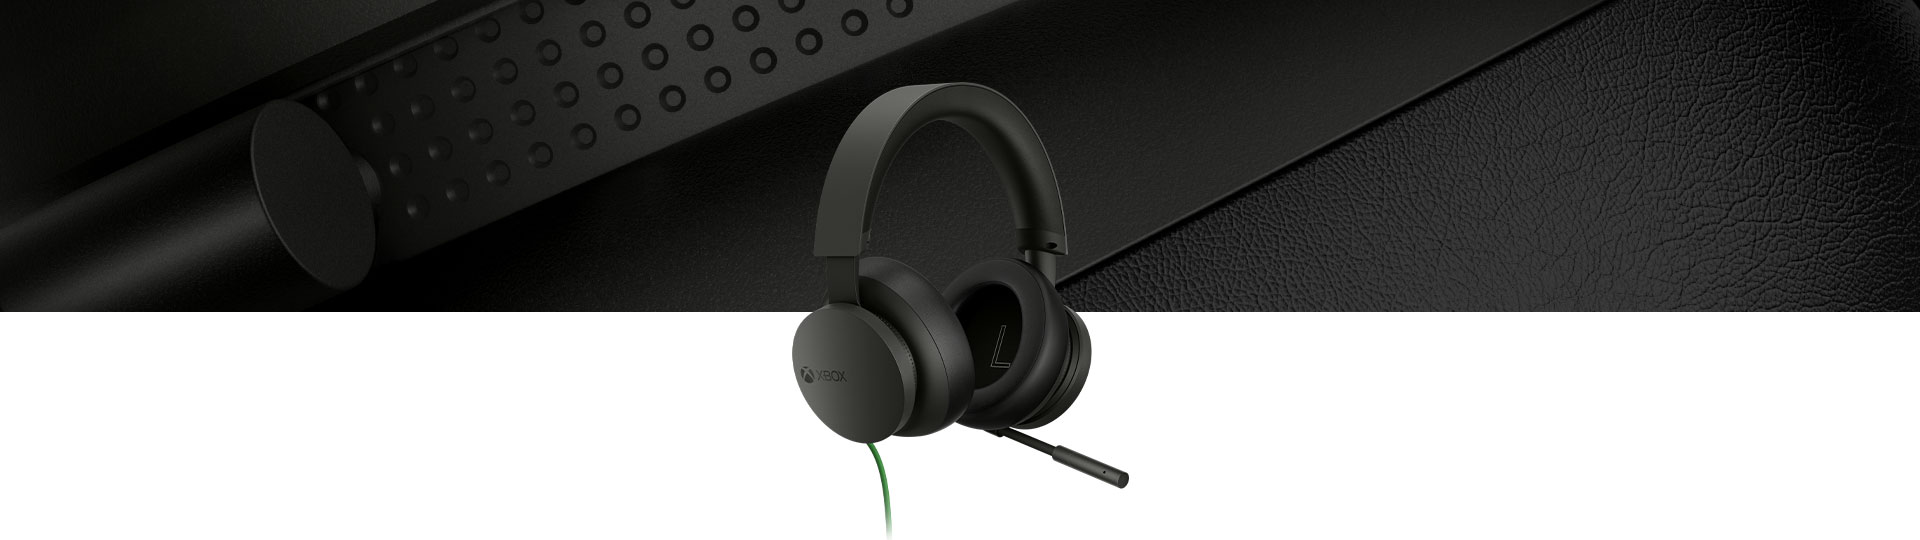 Stereo náhlavní souprava pro Xbox s detailním záběrem na stereofonní sluchátka na pozadí